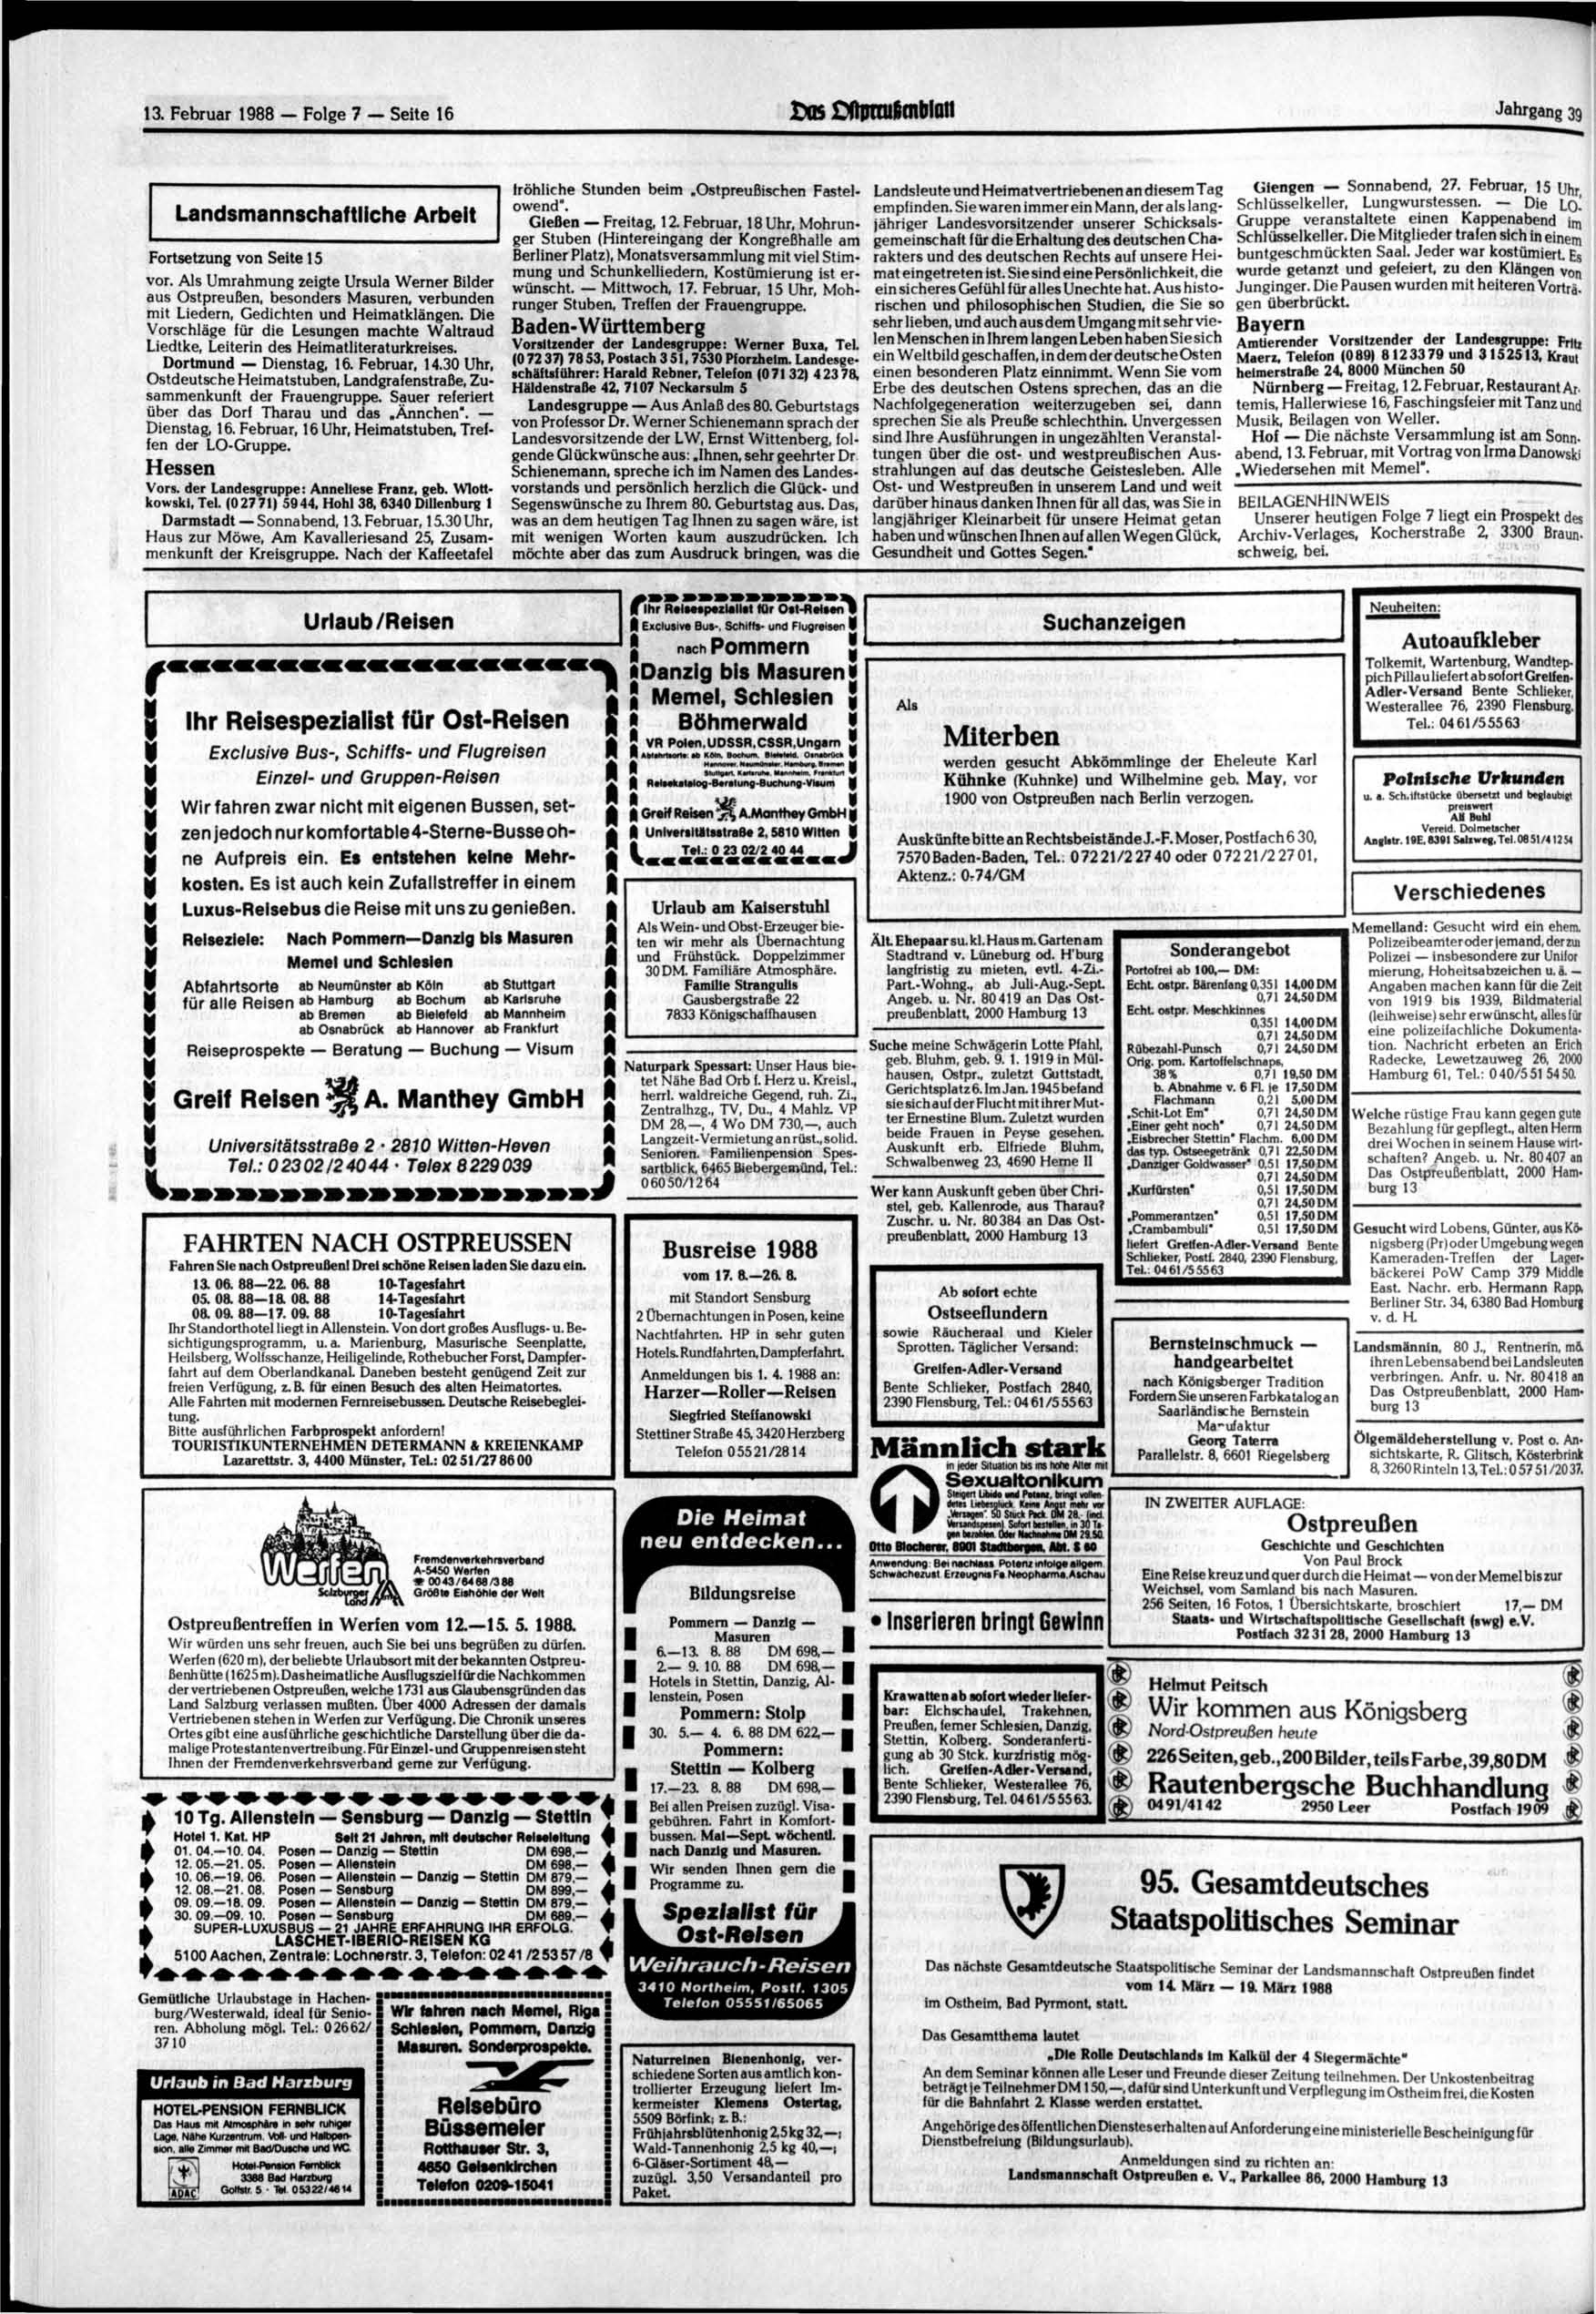 13. Februar 1988 Folge 7 Seite 16 as OßjKtufimblQti Jahrgang 39 Landsmannschaftliche Arbeit Fortsetzung von Seite 15 vor.